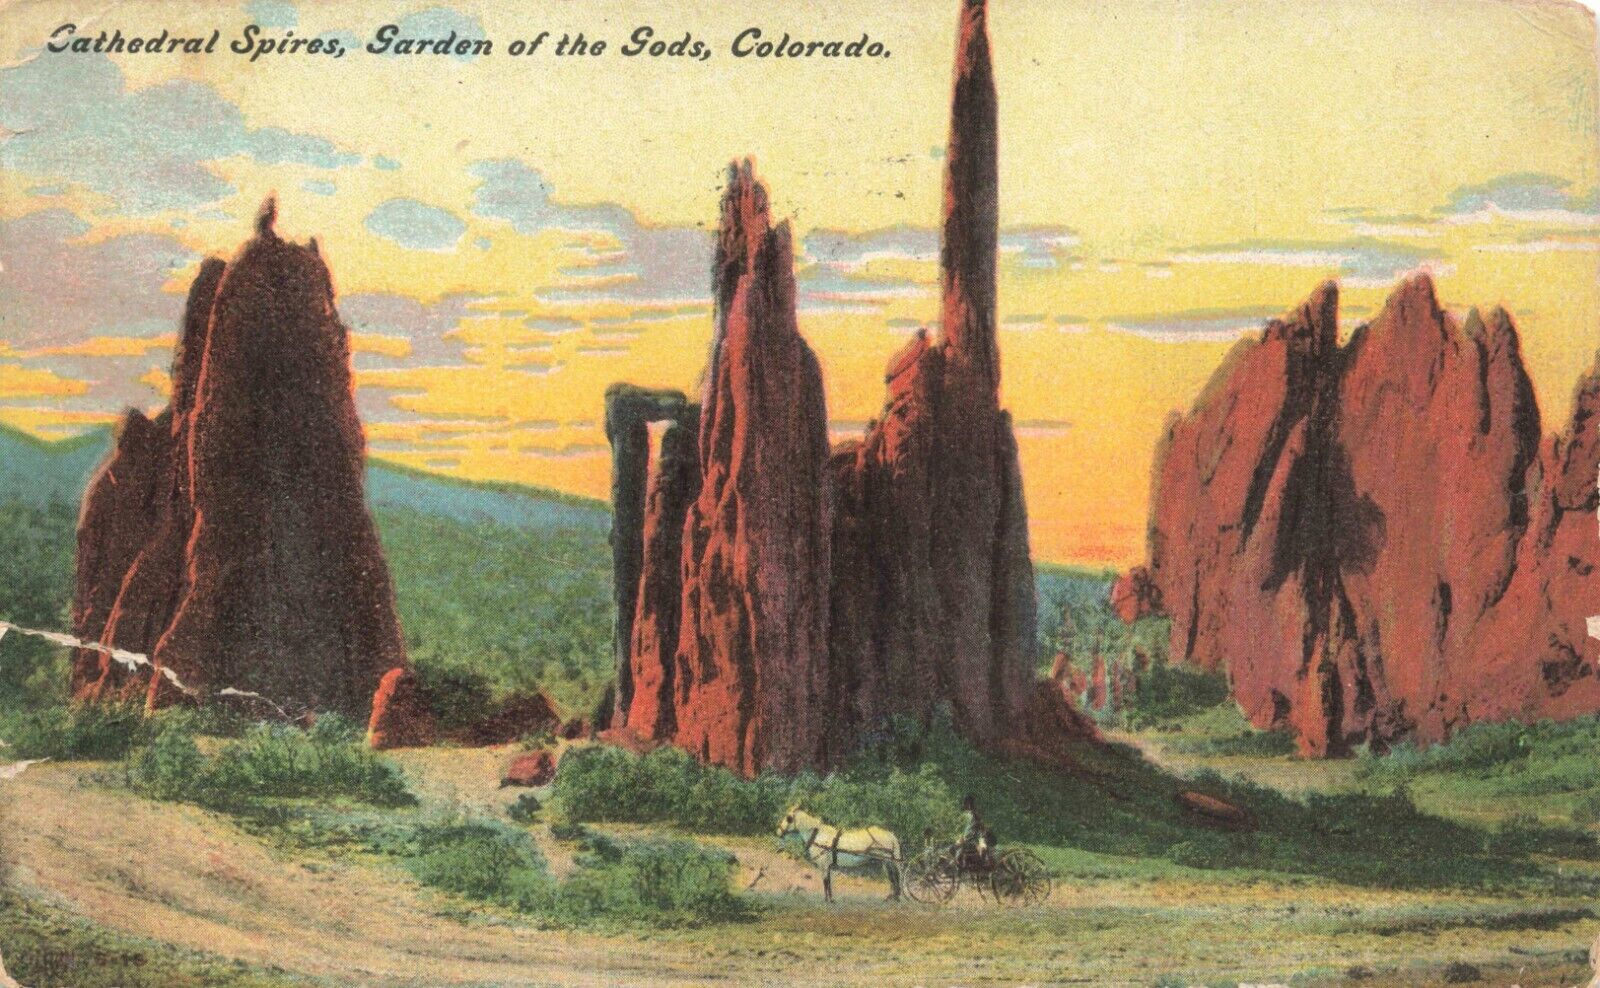 Postcard CO Colorado Springs 1911 Garden of Gods Cathedral Spires Horse & Wagon